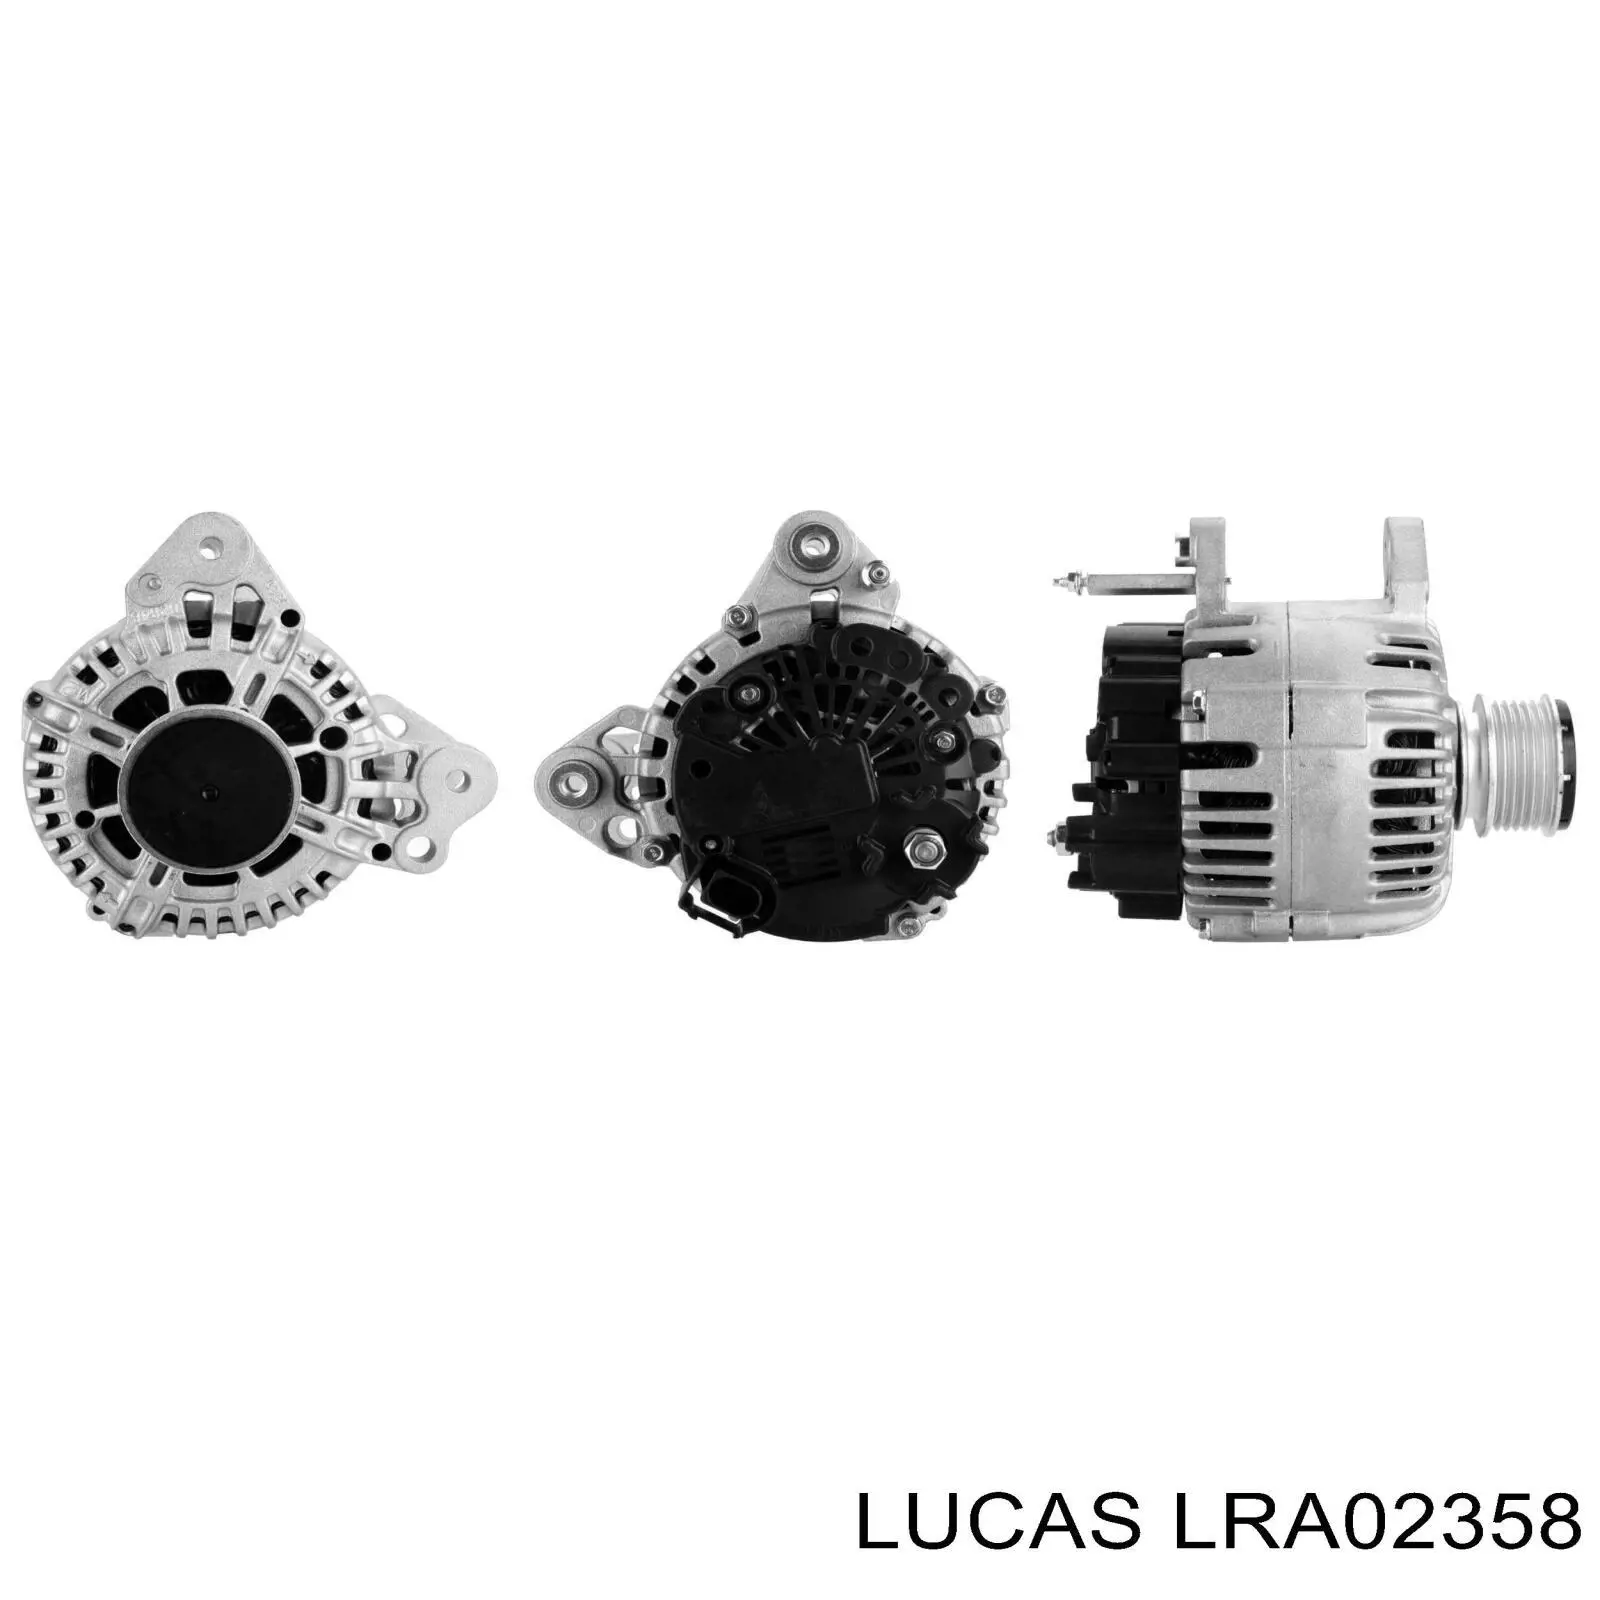 LRA02358 Lucas генератор